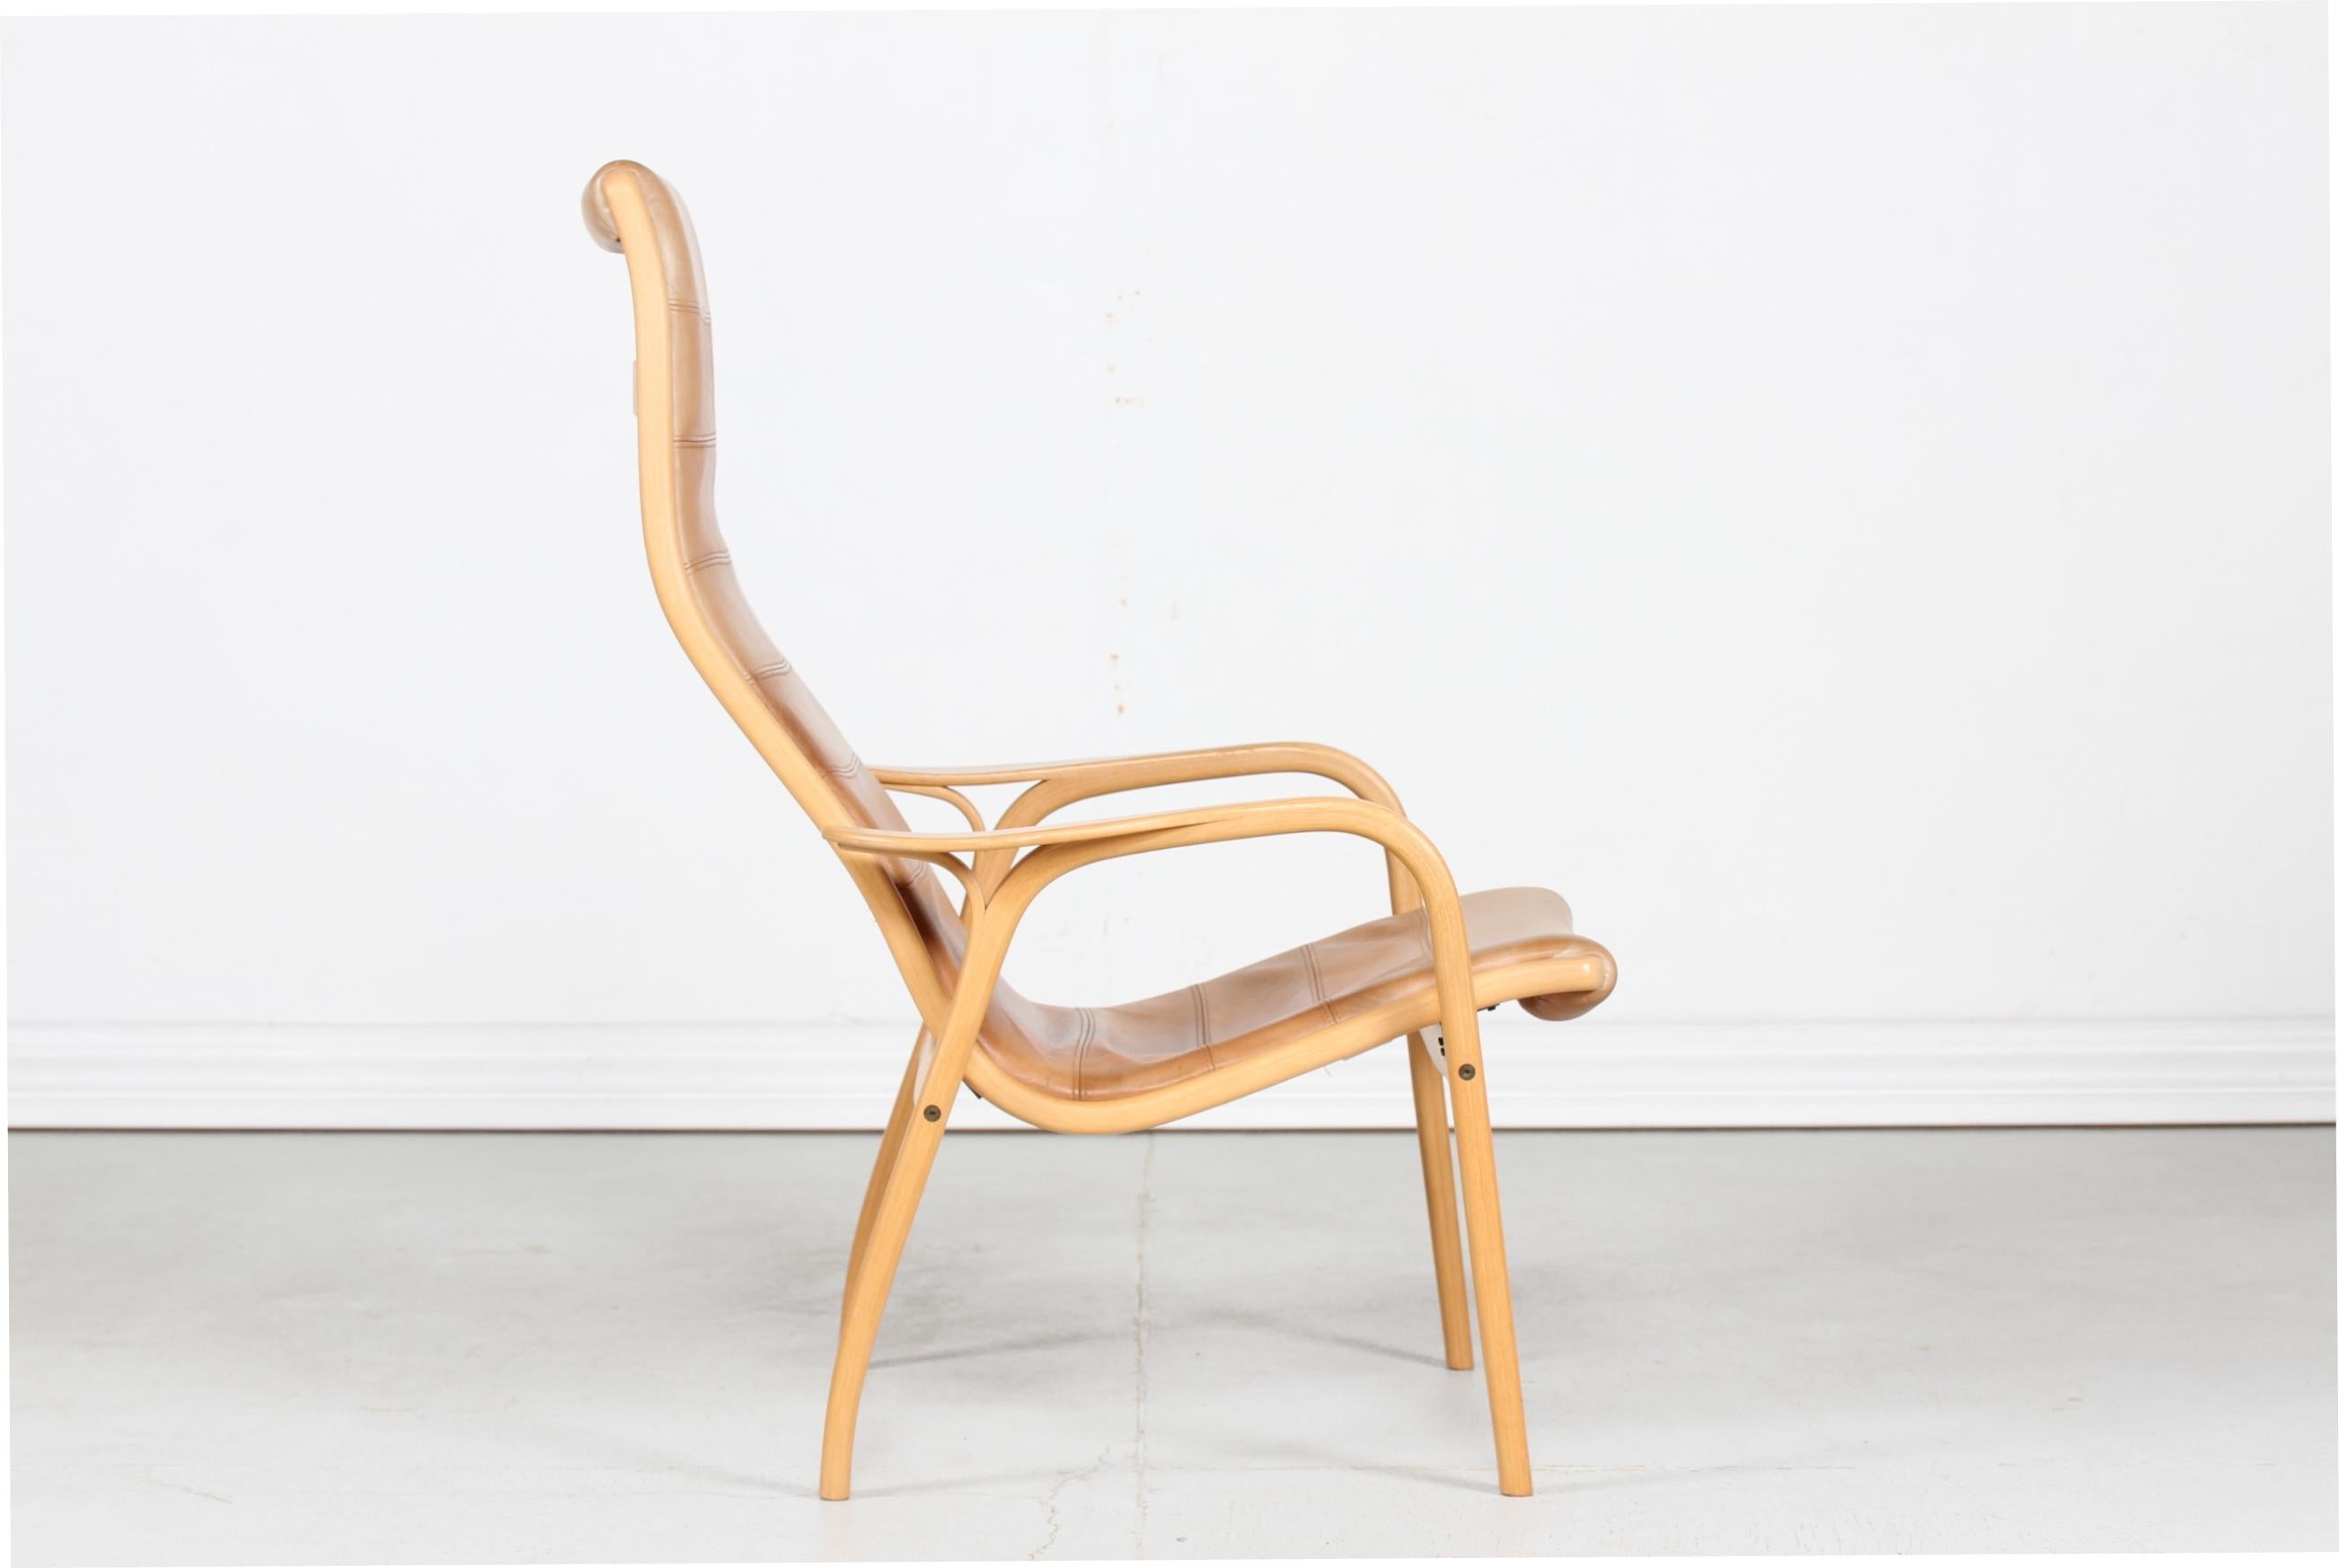 Chaise de salon Lamino avec structure en contreplaqué de hêtre cintré à la vapeur et sièges en cuir lisse de couleur cognac. Cet article particulier est doté de surpiqûres en cuir. 
La chaise longue est conçue par Yngve Ekström (1913-1988) en 1956